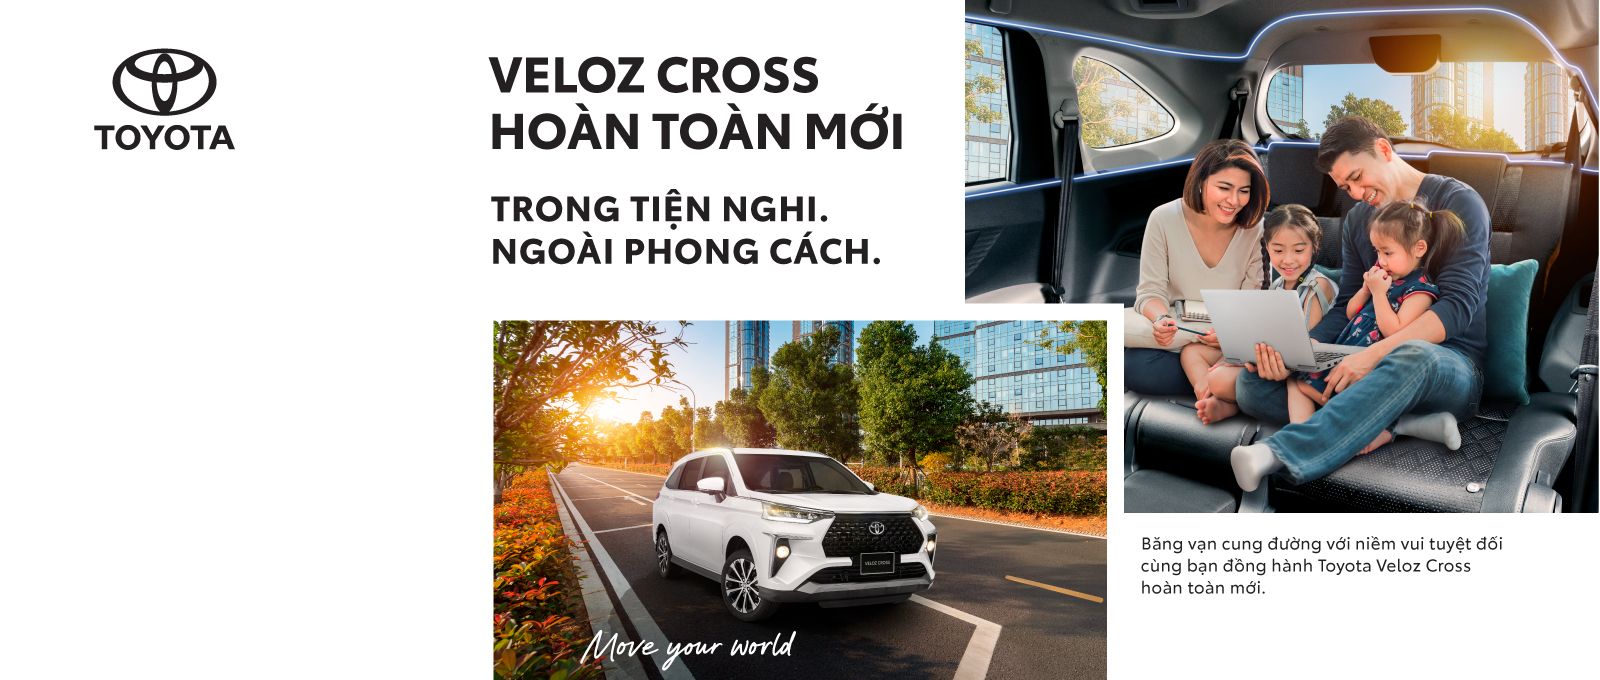 Toyota Việt Nam chính thức giới thiệu Khẩu hiệu (Tagline) mới của thương hiệu -“Move your world”- cùng Bộ đôi Veloz Cross và Avanza Premio hoàn toàn mới, xác lập chuẩn mực mới cho phân khúc MPV tại Việt Nam